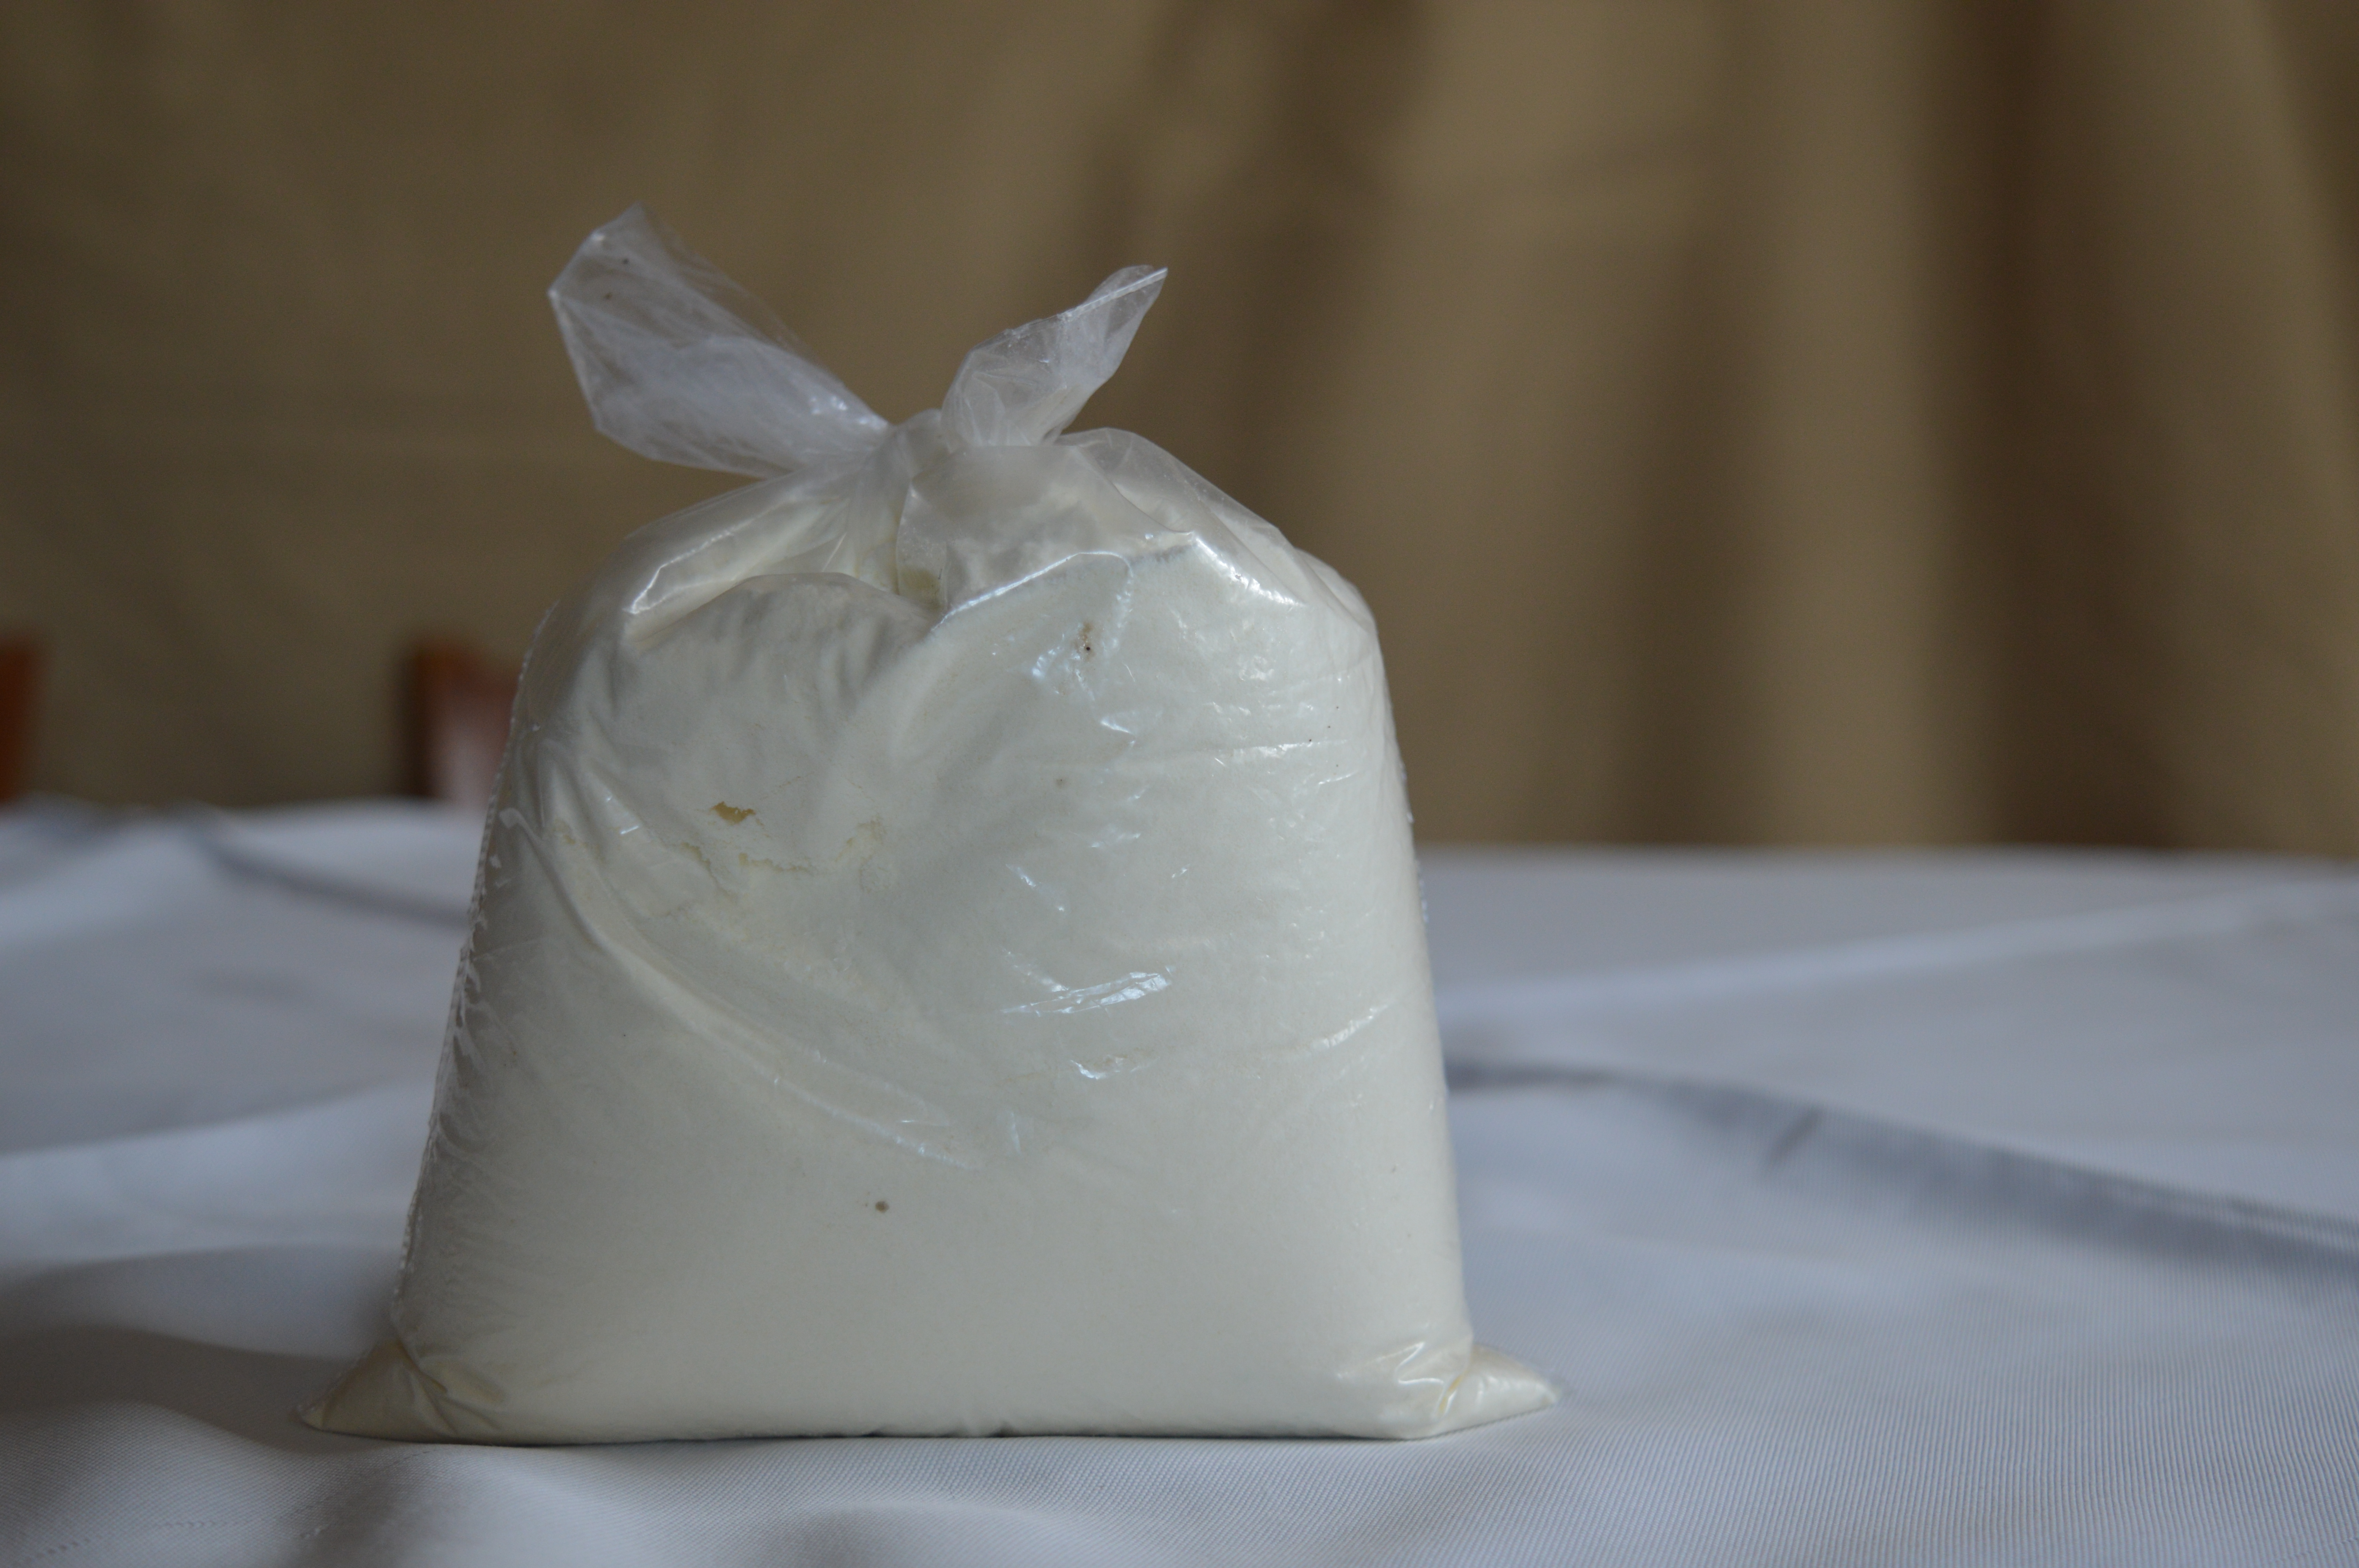 Ante la escasez de la leche en polvo al detalle, las amas de casa están recurriendo a comprar como sustituto un producto que no está apto para el consumo humano.